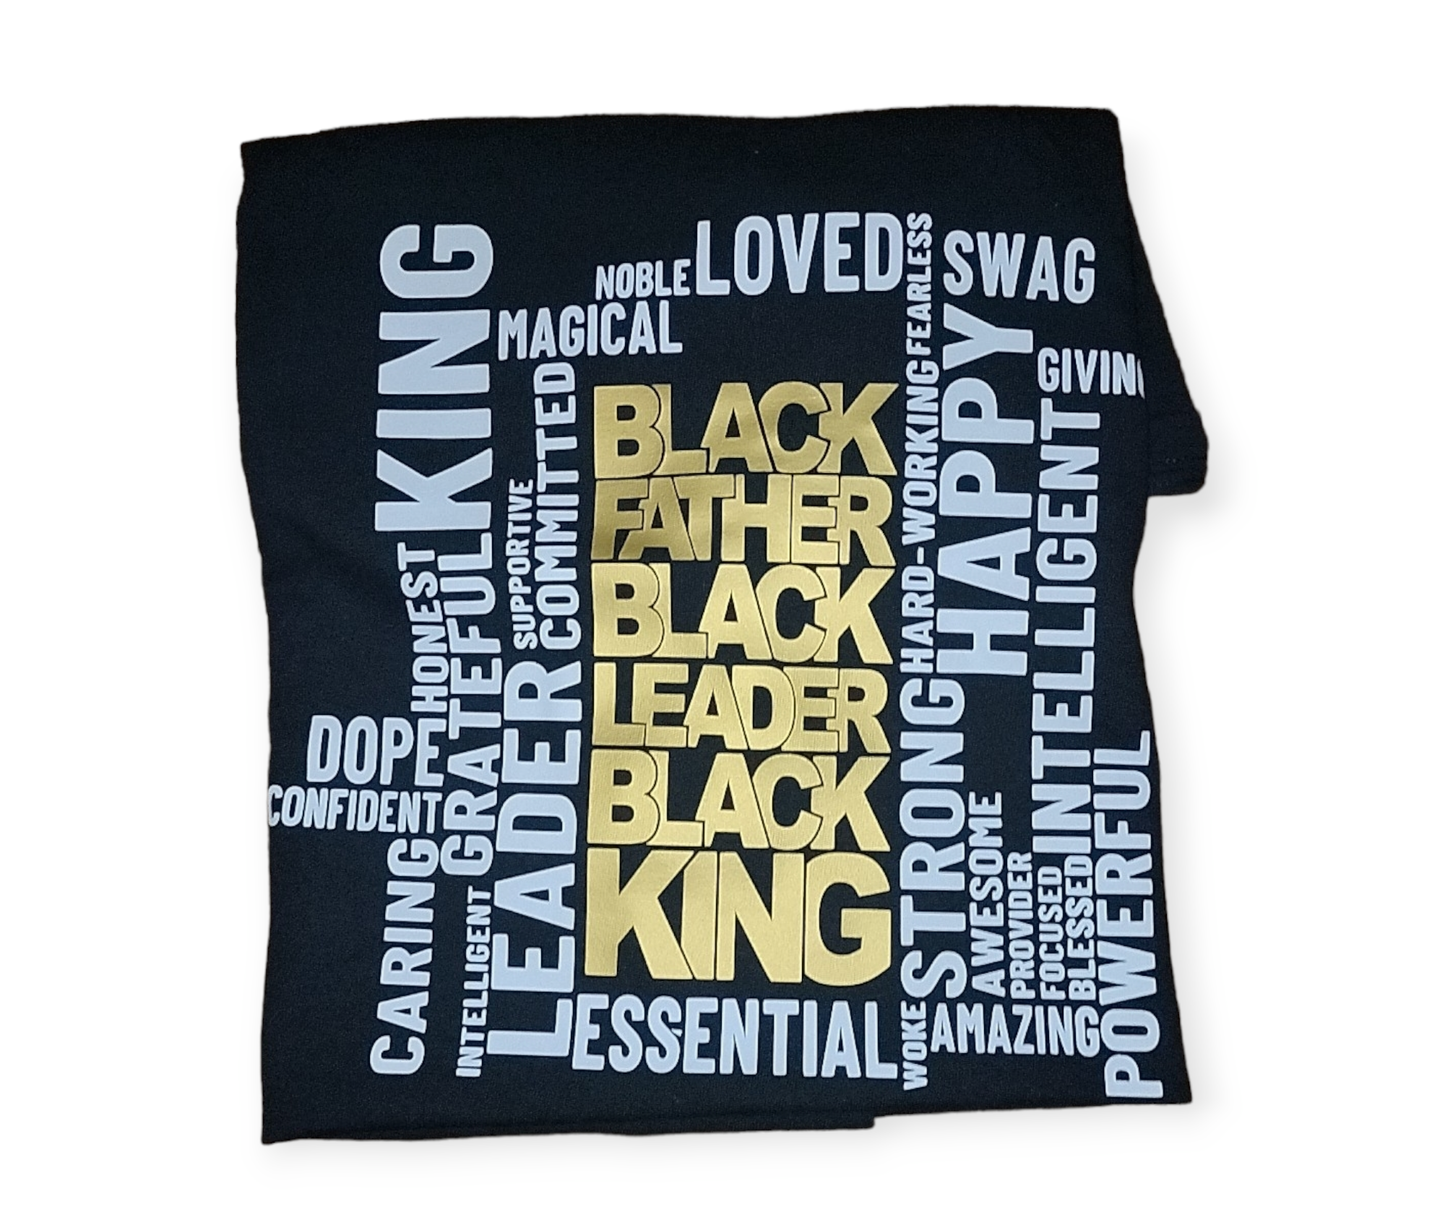 Black Father Black Leader Black King T-shirt